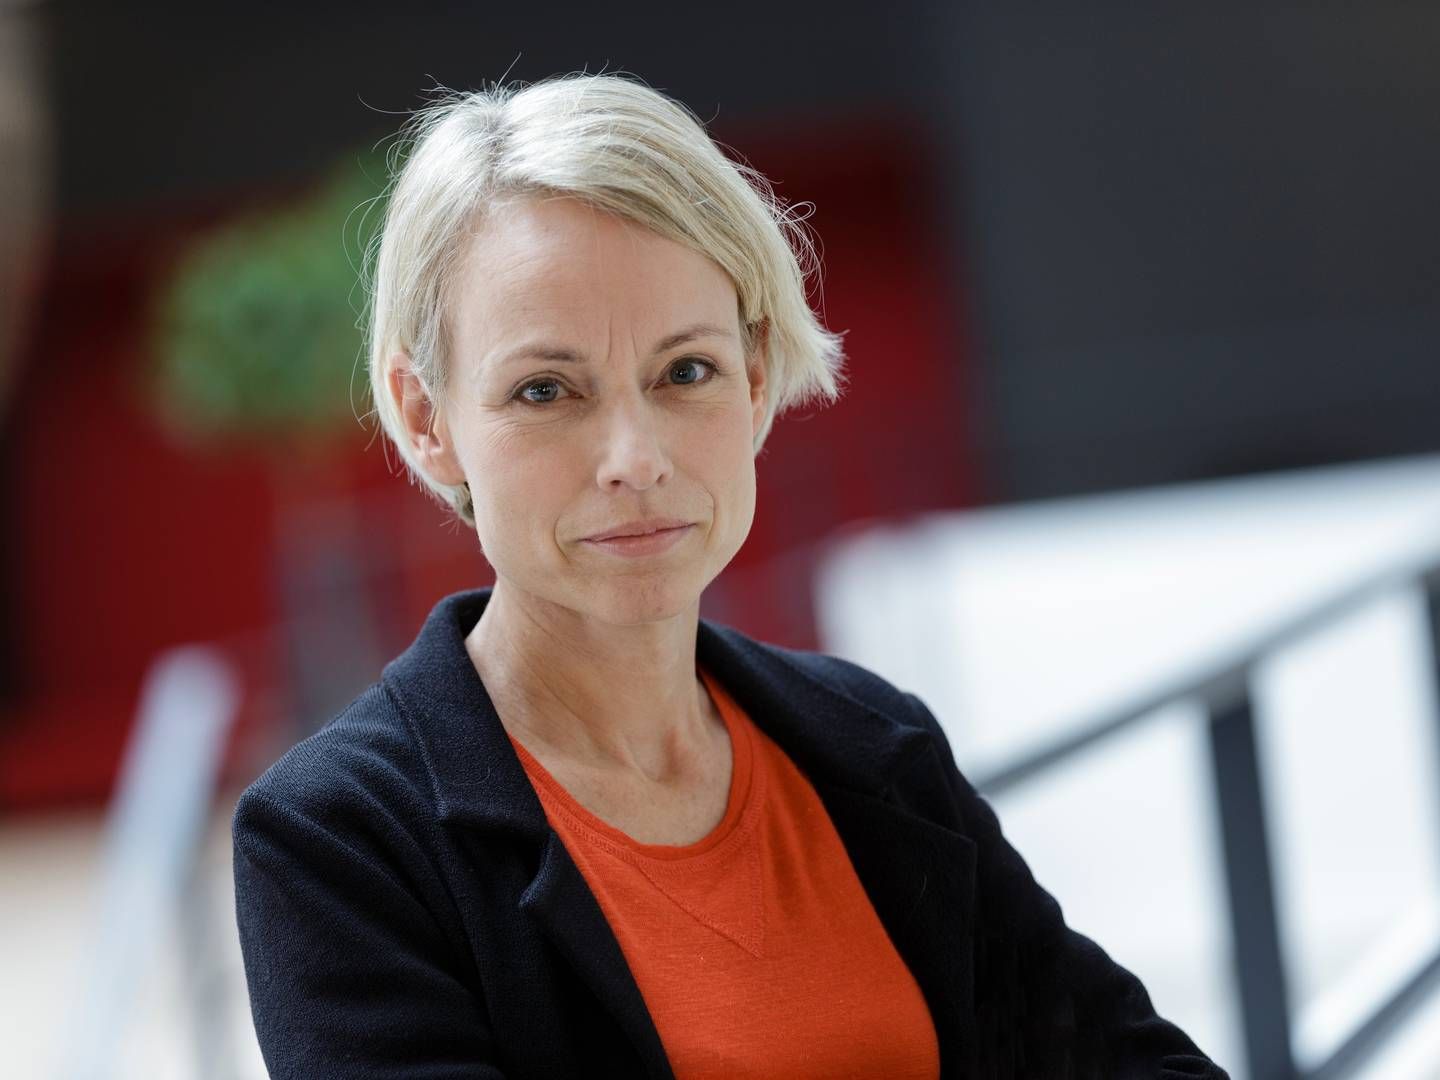 Forbrugerombudsmanden Christina Toftegaard Nielsen er klar til at tage næste skridt i sagen mod Jyske Bank, skriver medie. | Foto: Pr